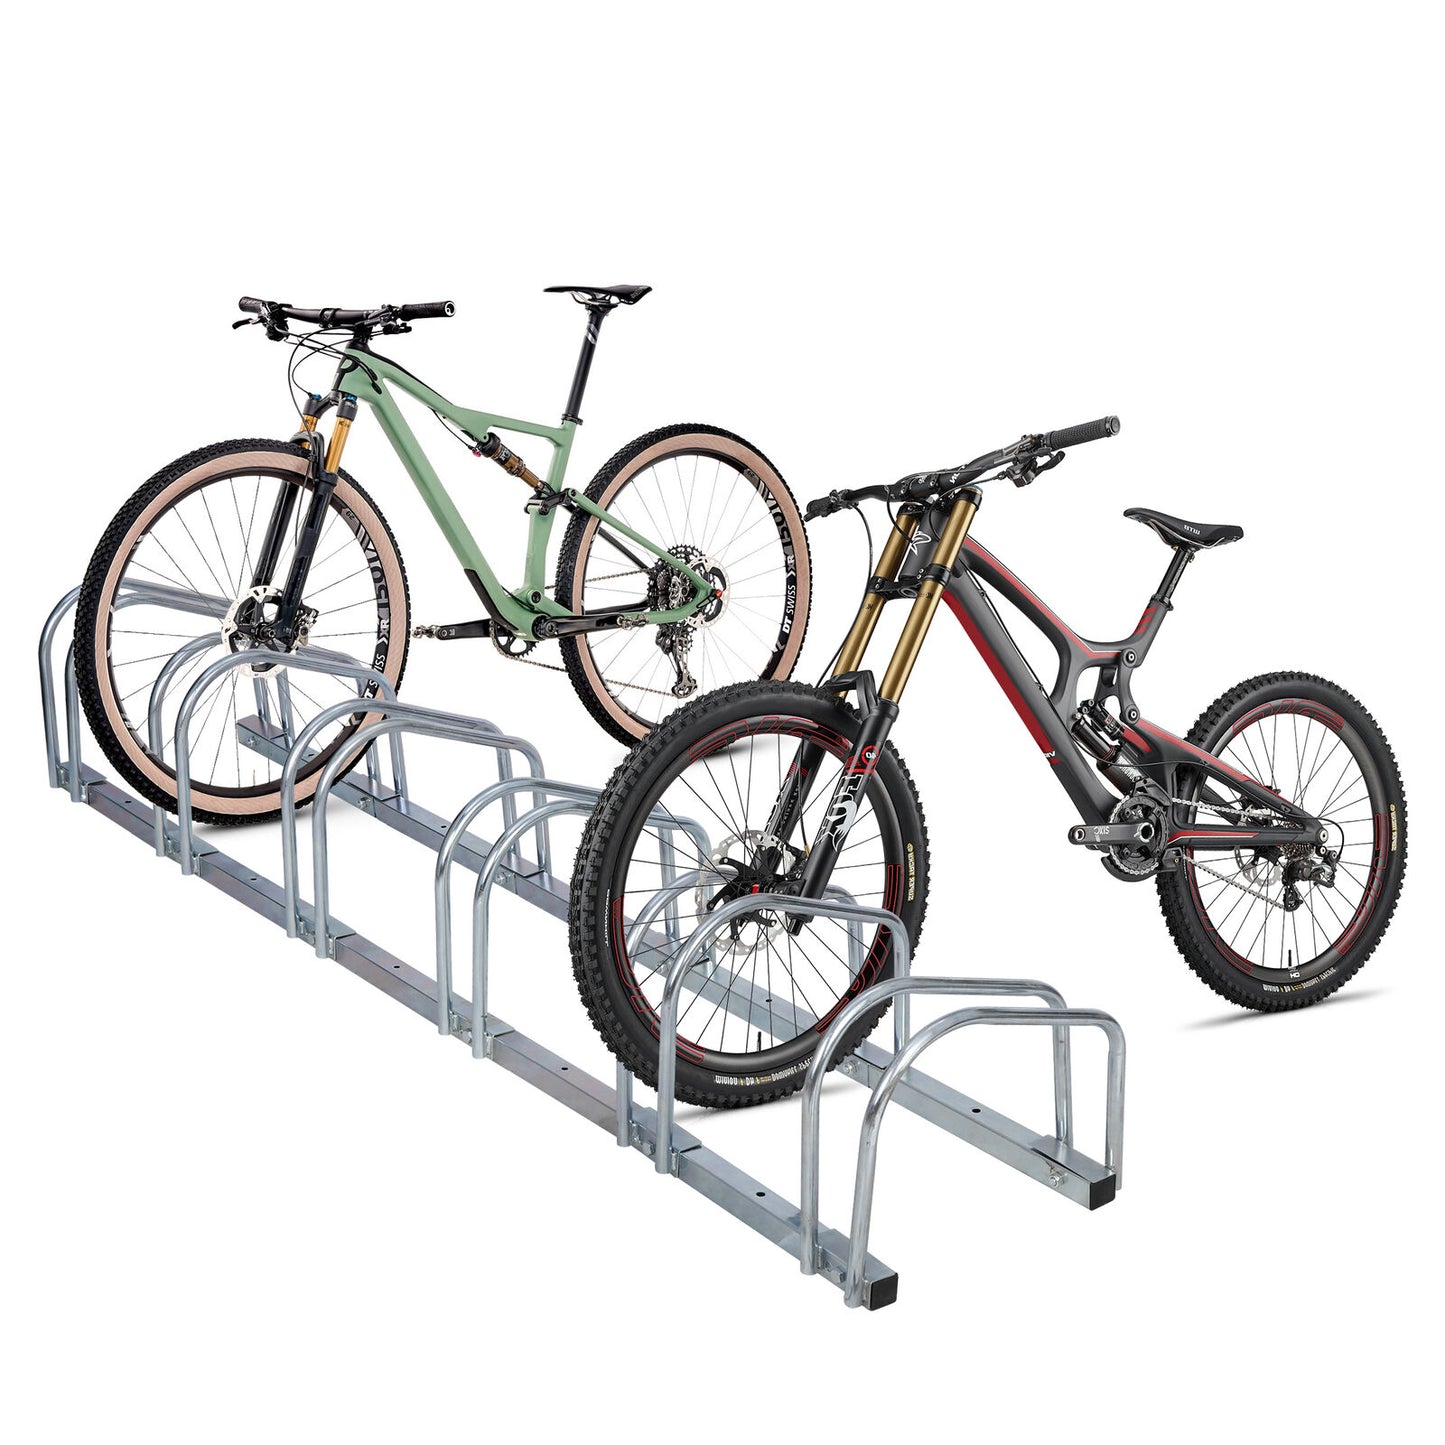 Portable1-6 Rack Bike Parking Rack Bike Floor Parking Adjustable Bicycle Storage